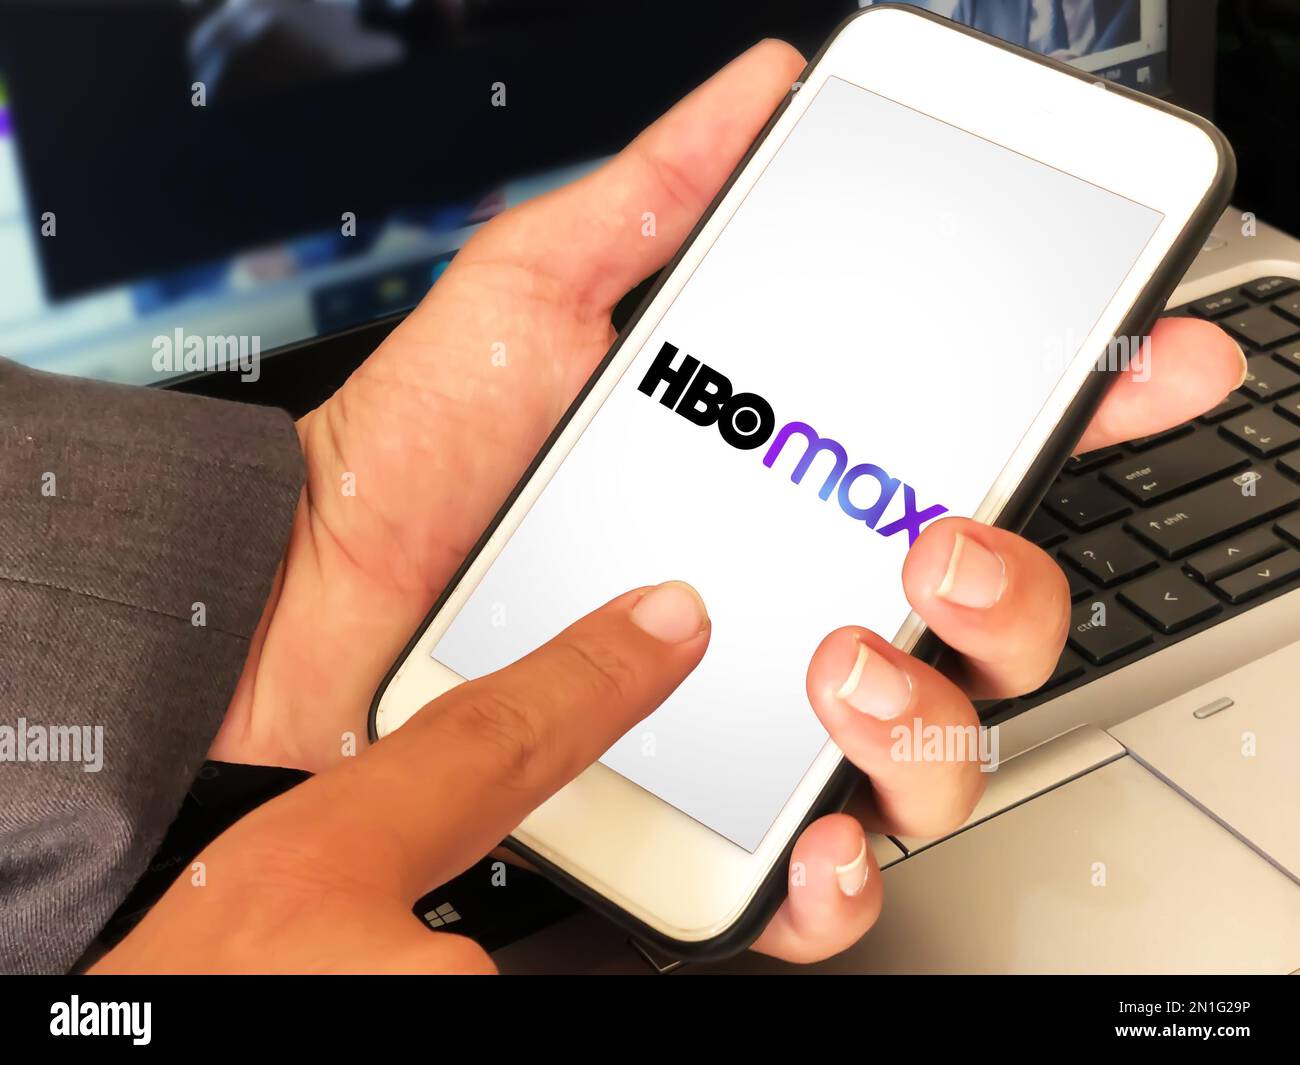 Application mobile de divertissement HBO Max avec homme l'utilisant, expérience éditoriale Banque D'Images